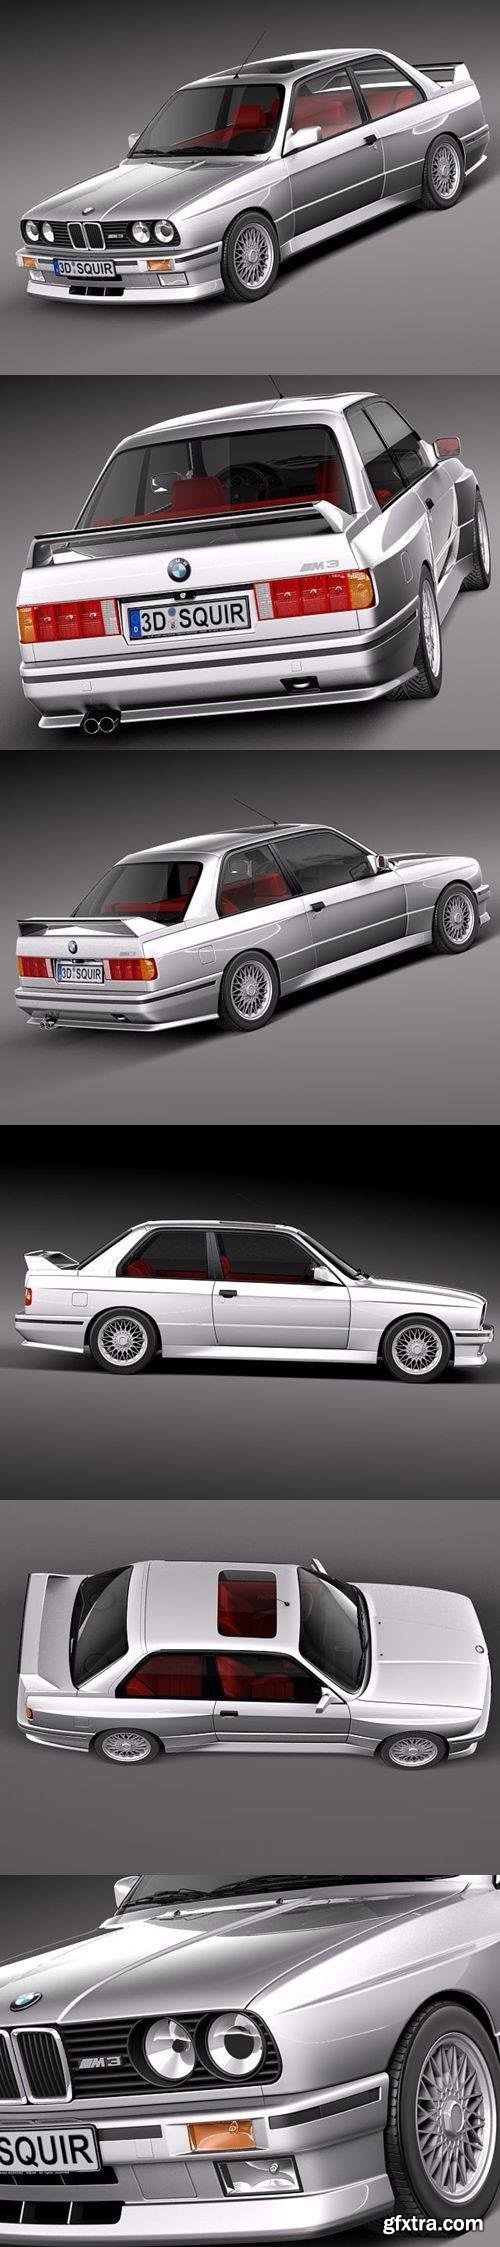 BMW M3 e30 1985-1991